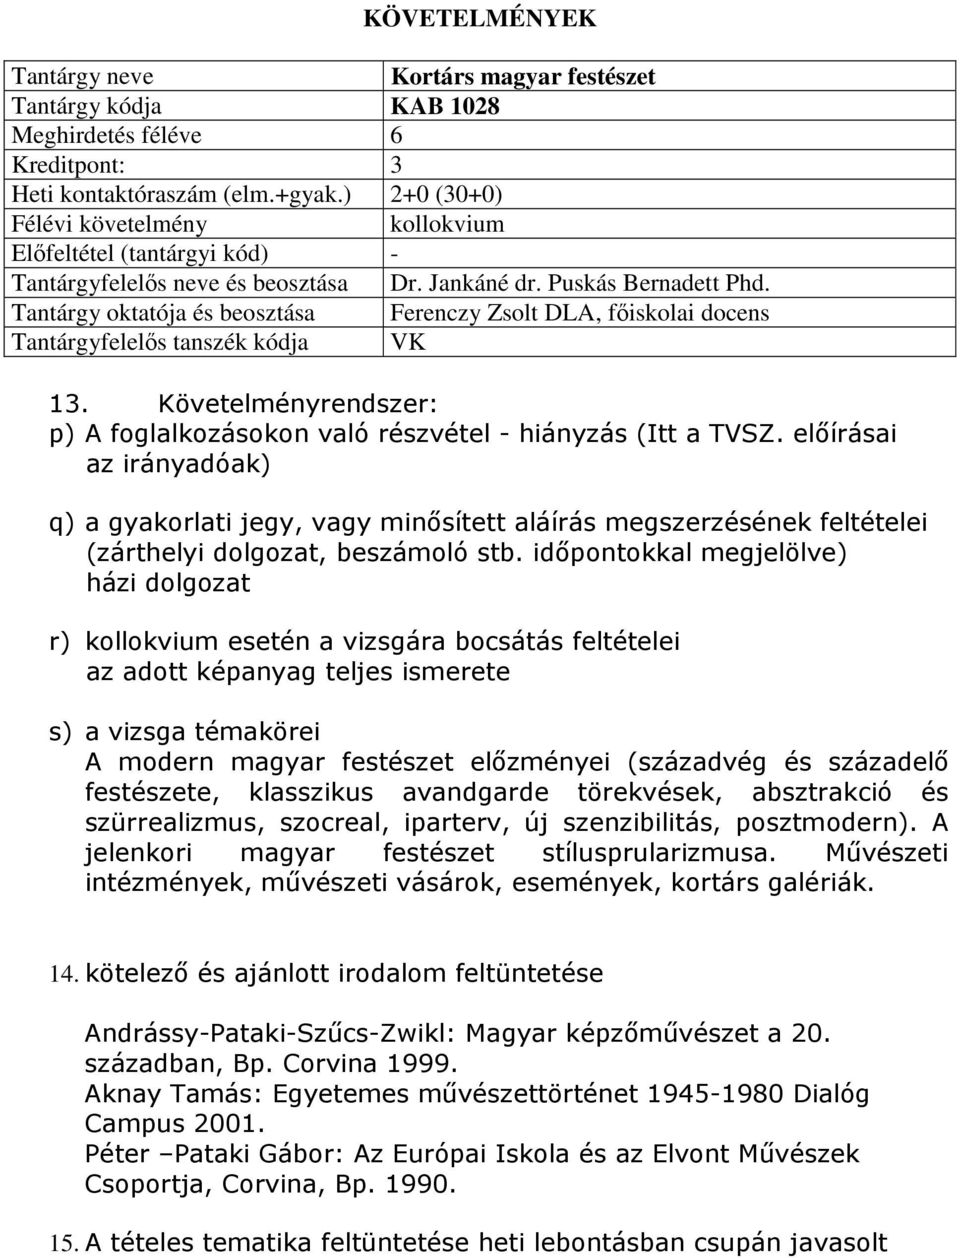 Tantárgy oktatója és beosztása Ferenczy Zsolt DLA, főiskolai docens Tantárgyfelelős tanszék kódja VK 13. Követelményrendszer: p) A foglalkozásokon való részvétel - hiányzás (Itt a TVSZ.